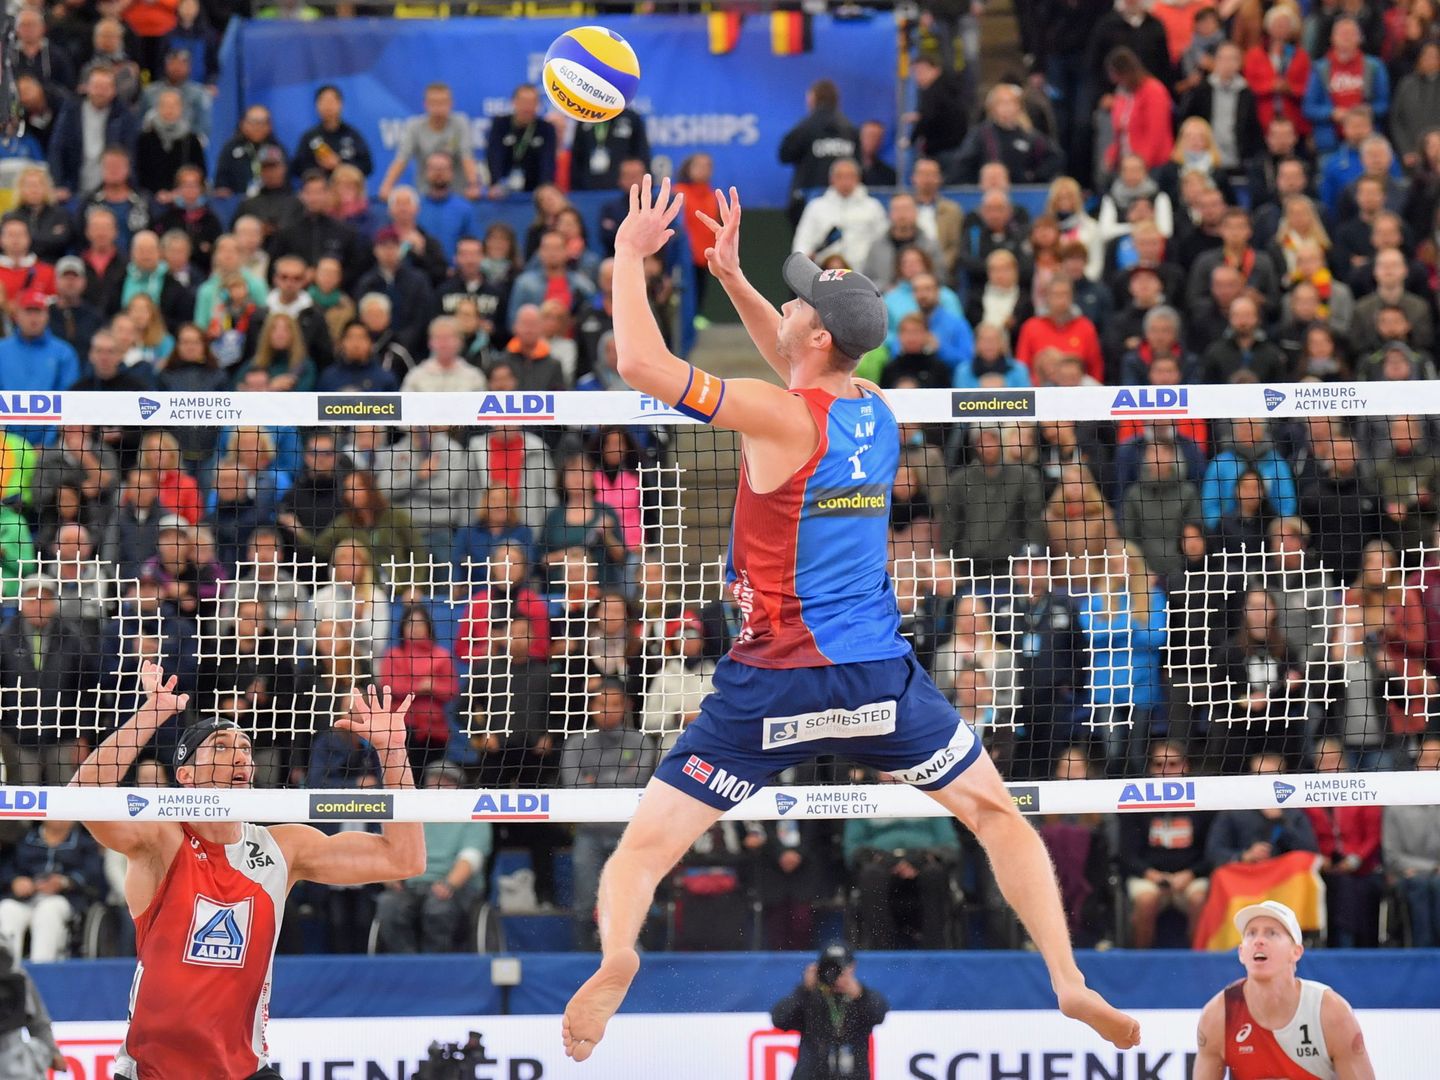 El noruego Anders Mol en el Campeonato Mundial de voleibol playa 2019 en Alemania. (Reuters)